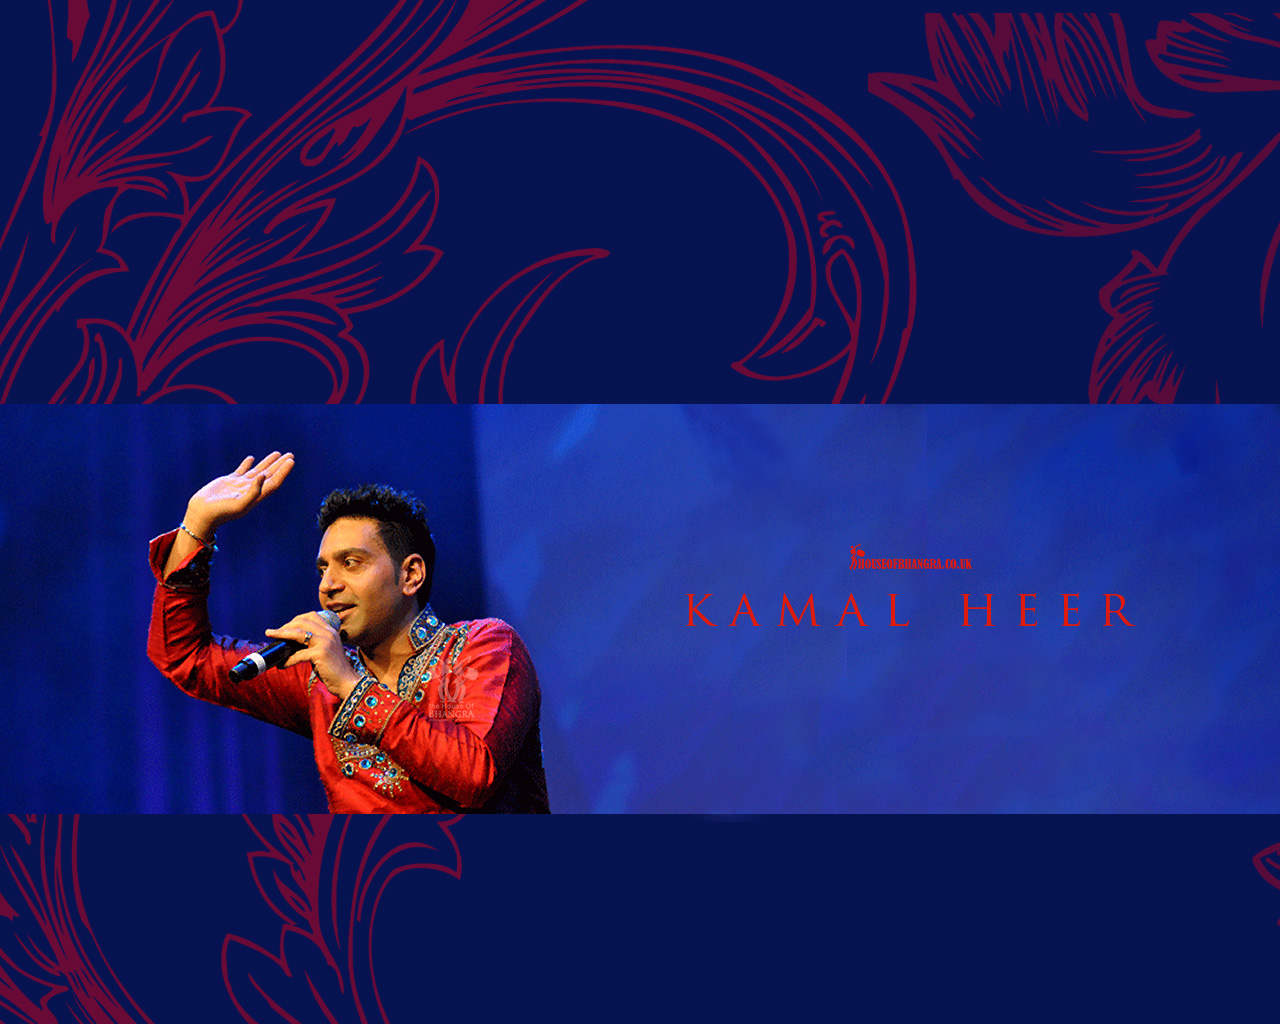 Kamal Heer Wonderful Singer